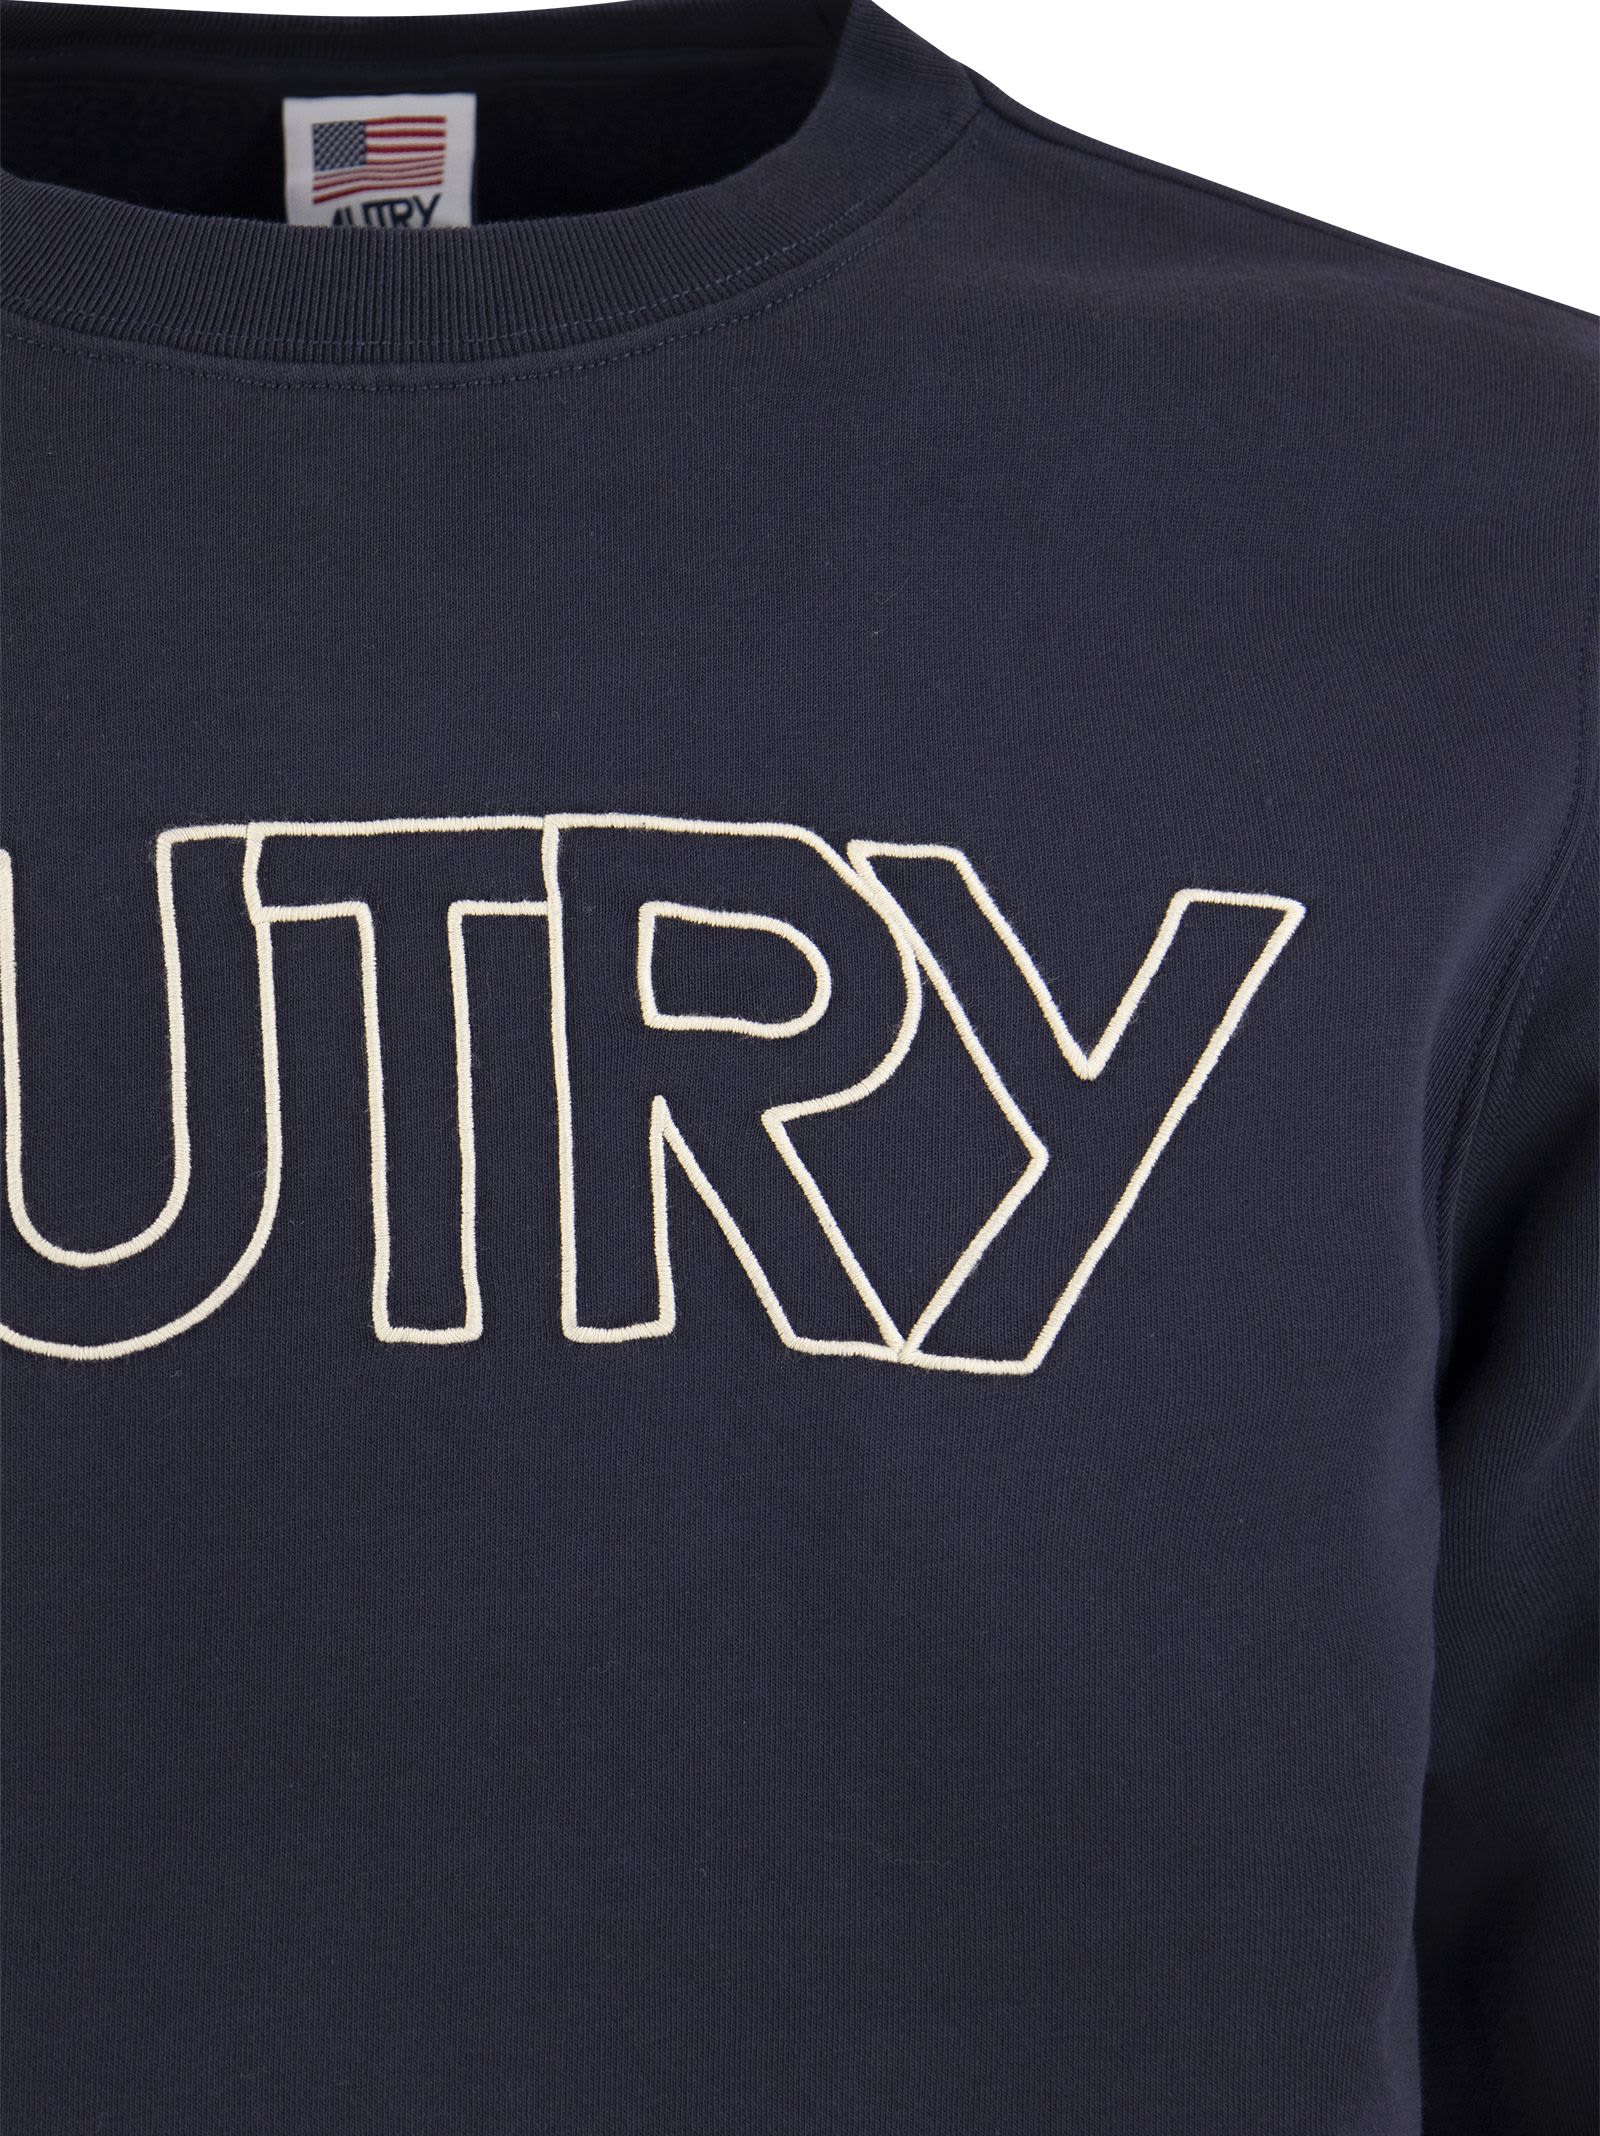 Shop Autry Round-neck Sweatshirt With Logo In Blue